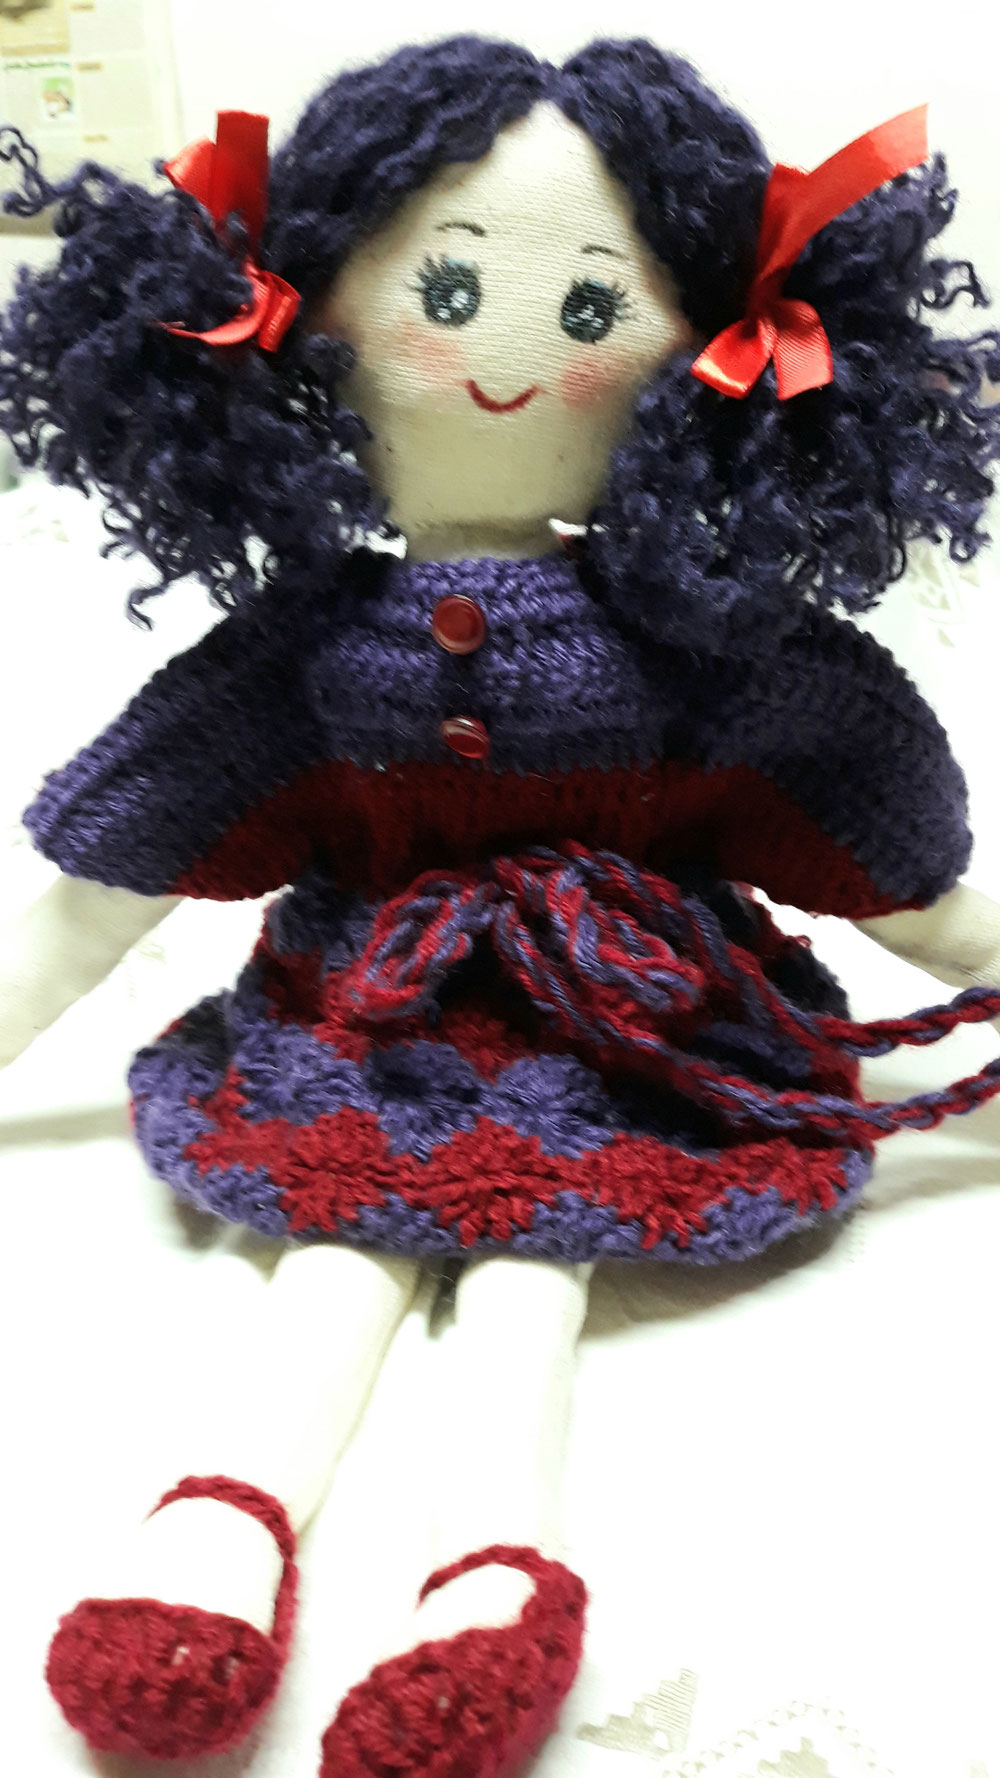 Bambola in stoffa e lana riciclata. Non più disponibile.